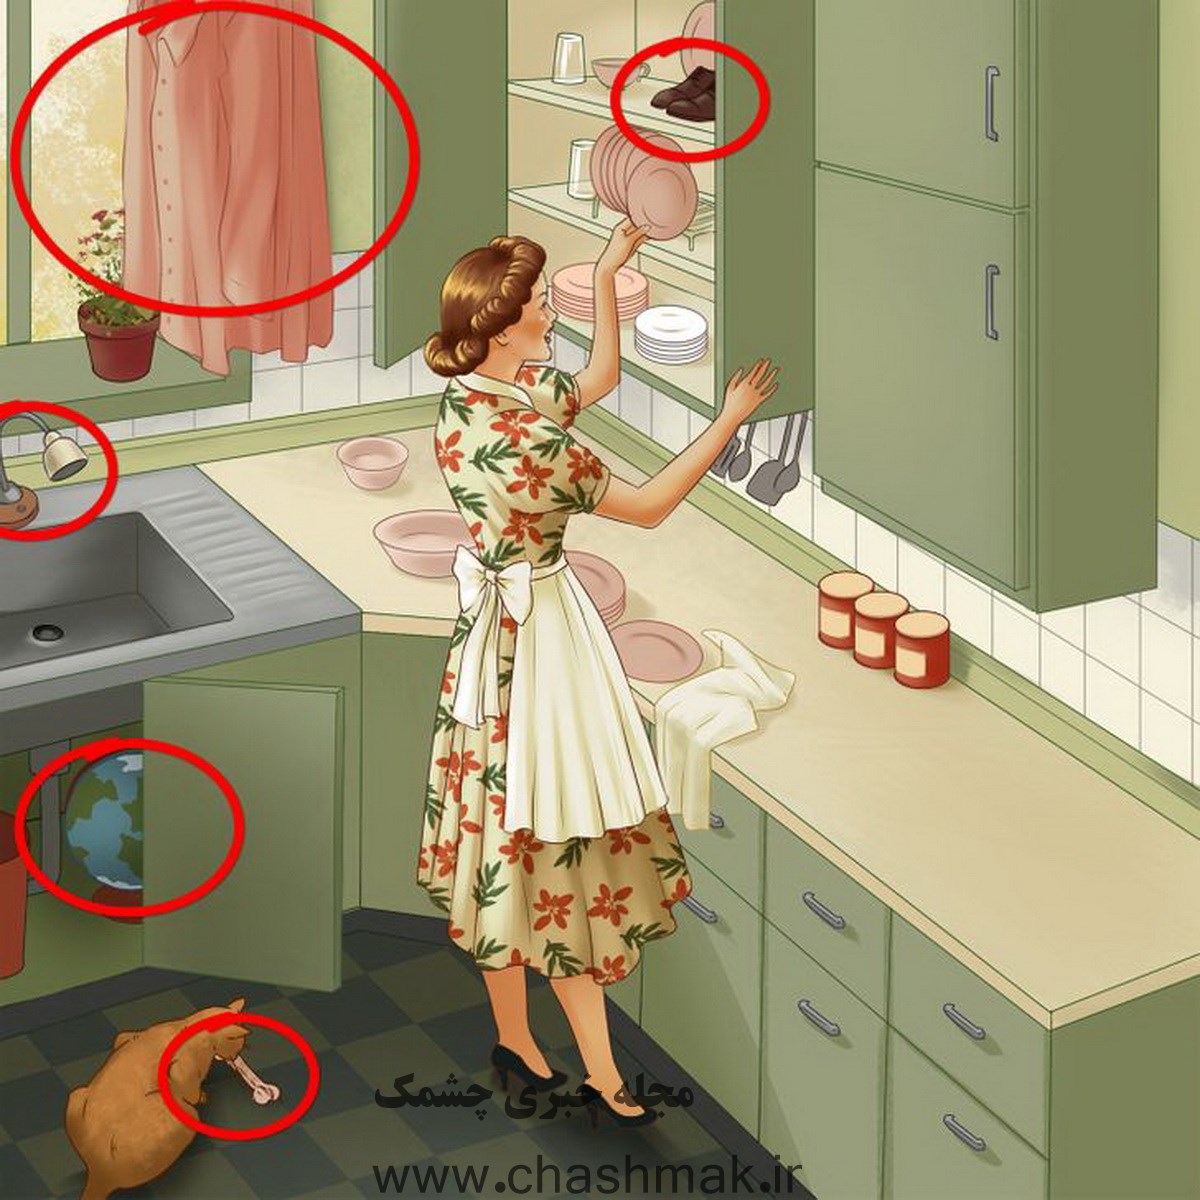 پاسخ تست قدرت بینایی یافتن اشتباه آشپزخانه